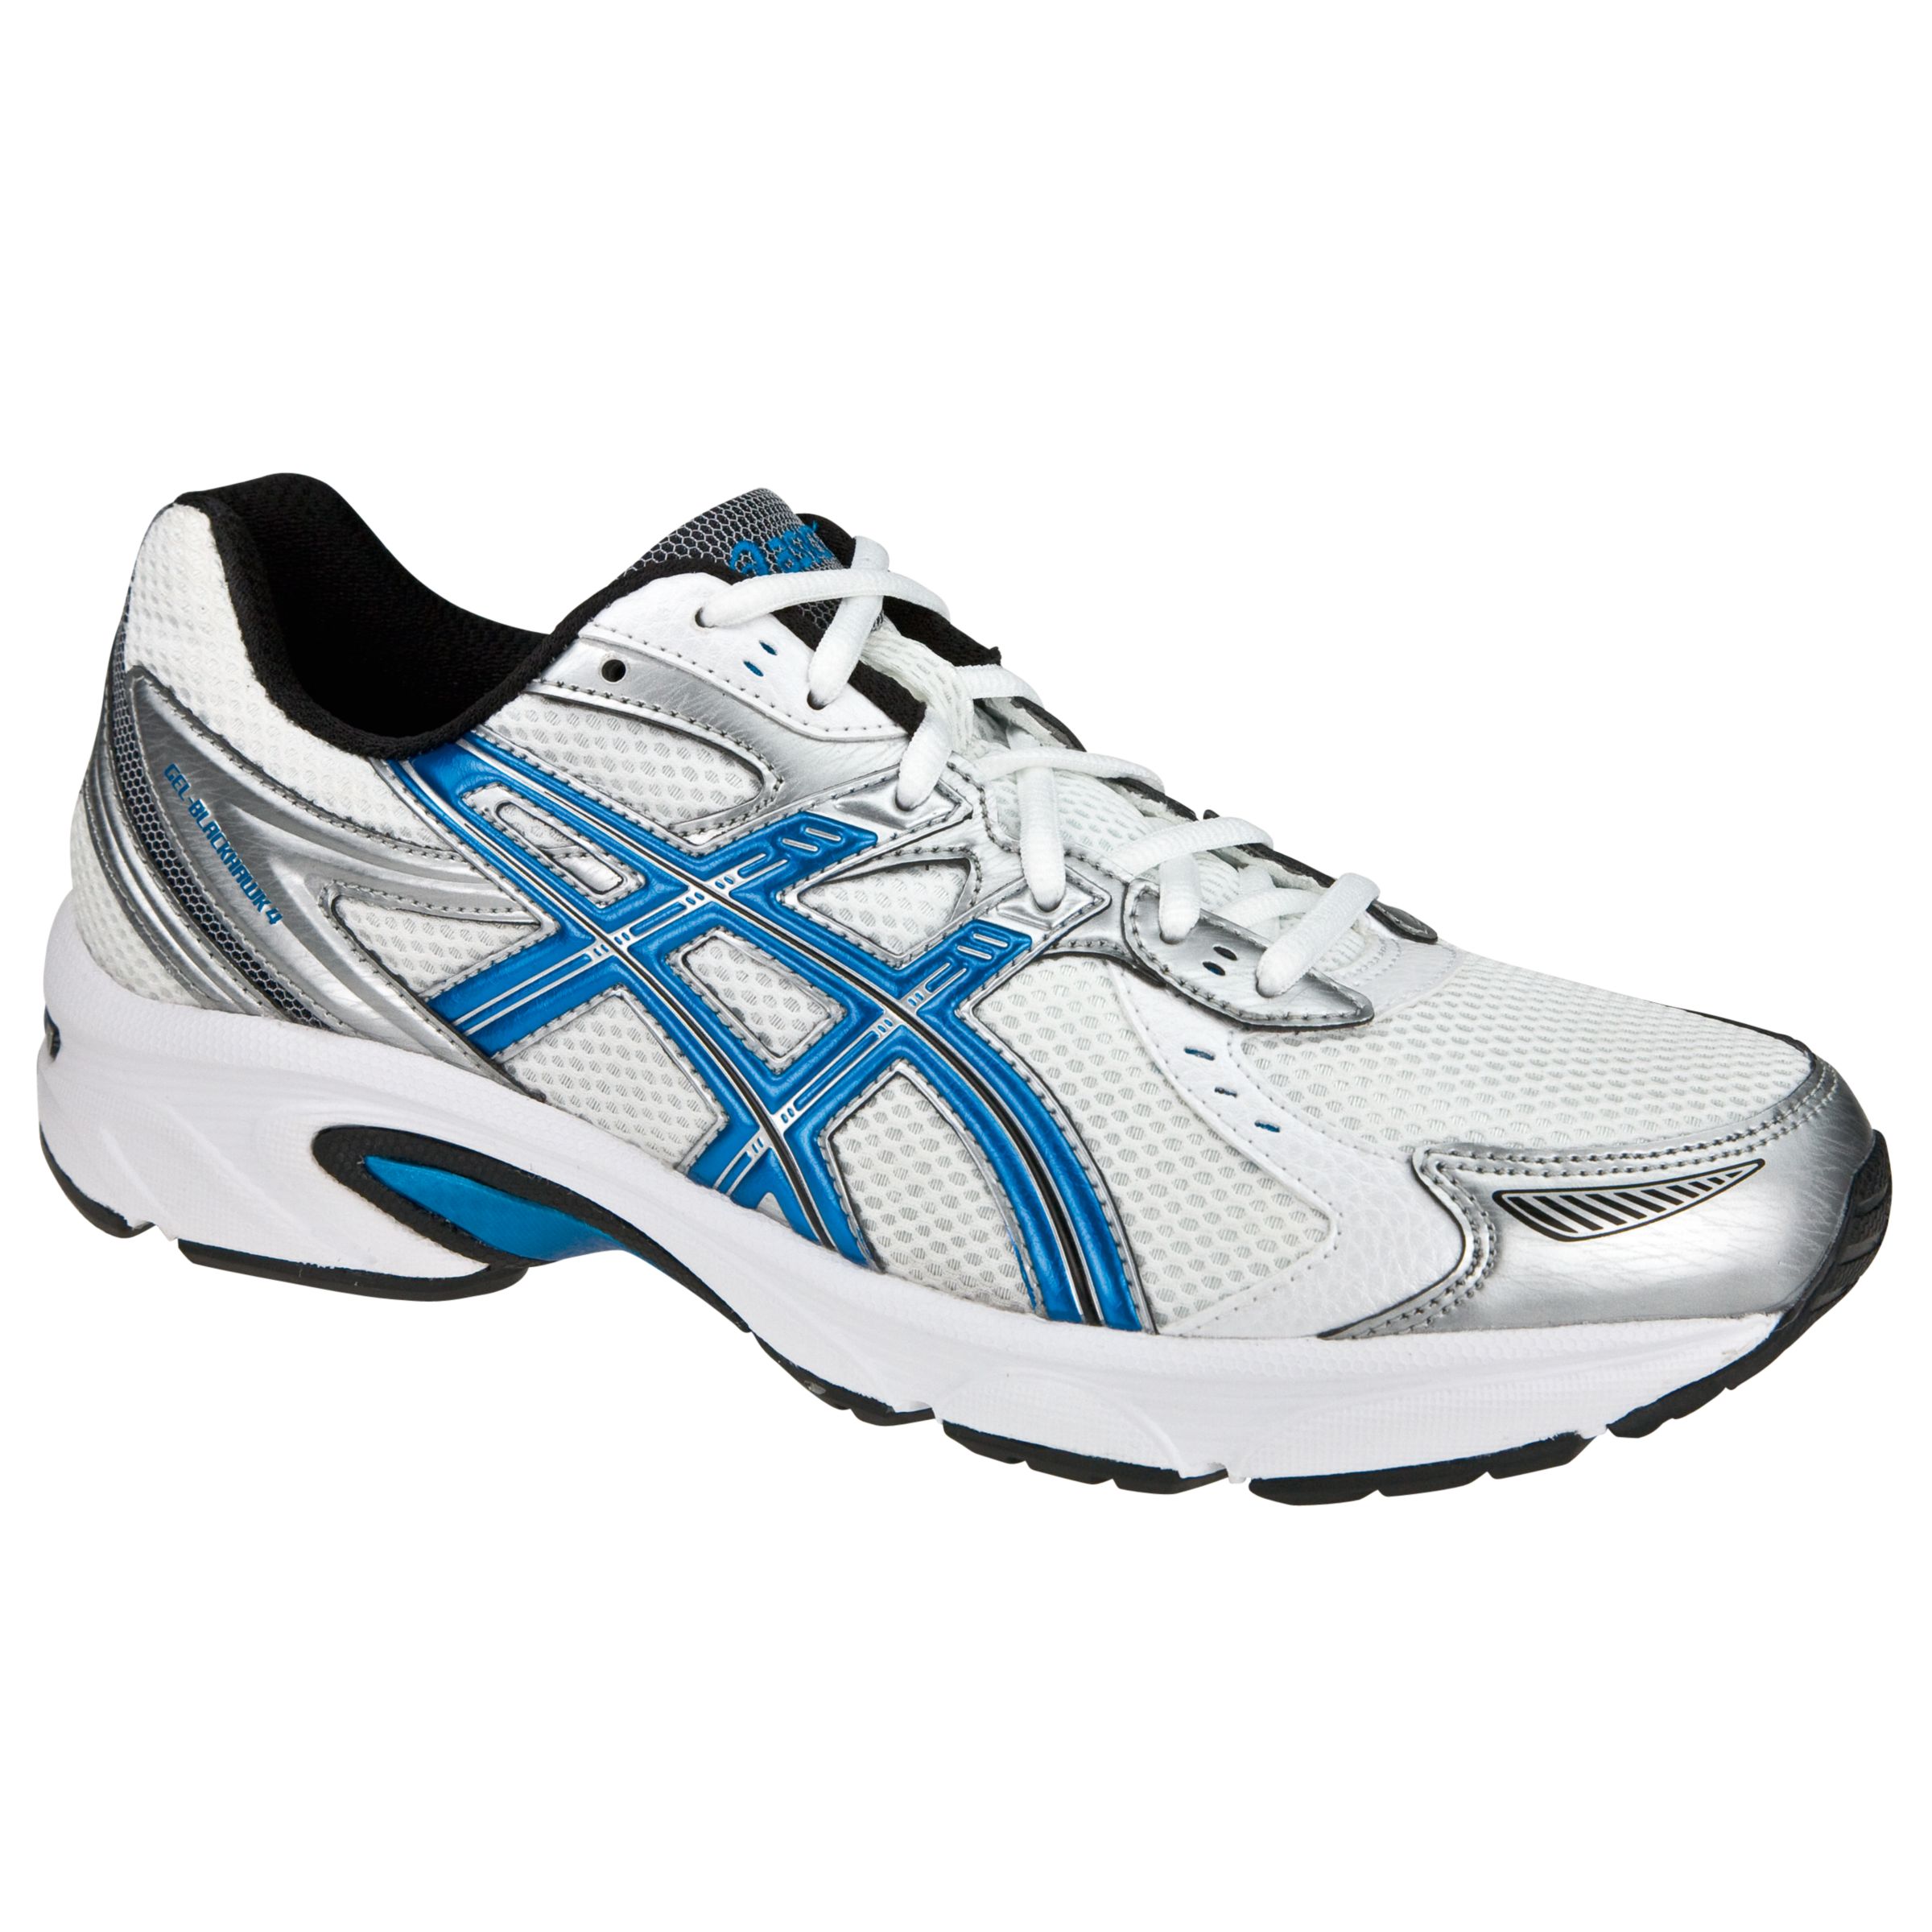 Asics Gel Blackhawk 4 Running Shoes, White/Blue